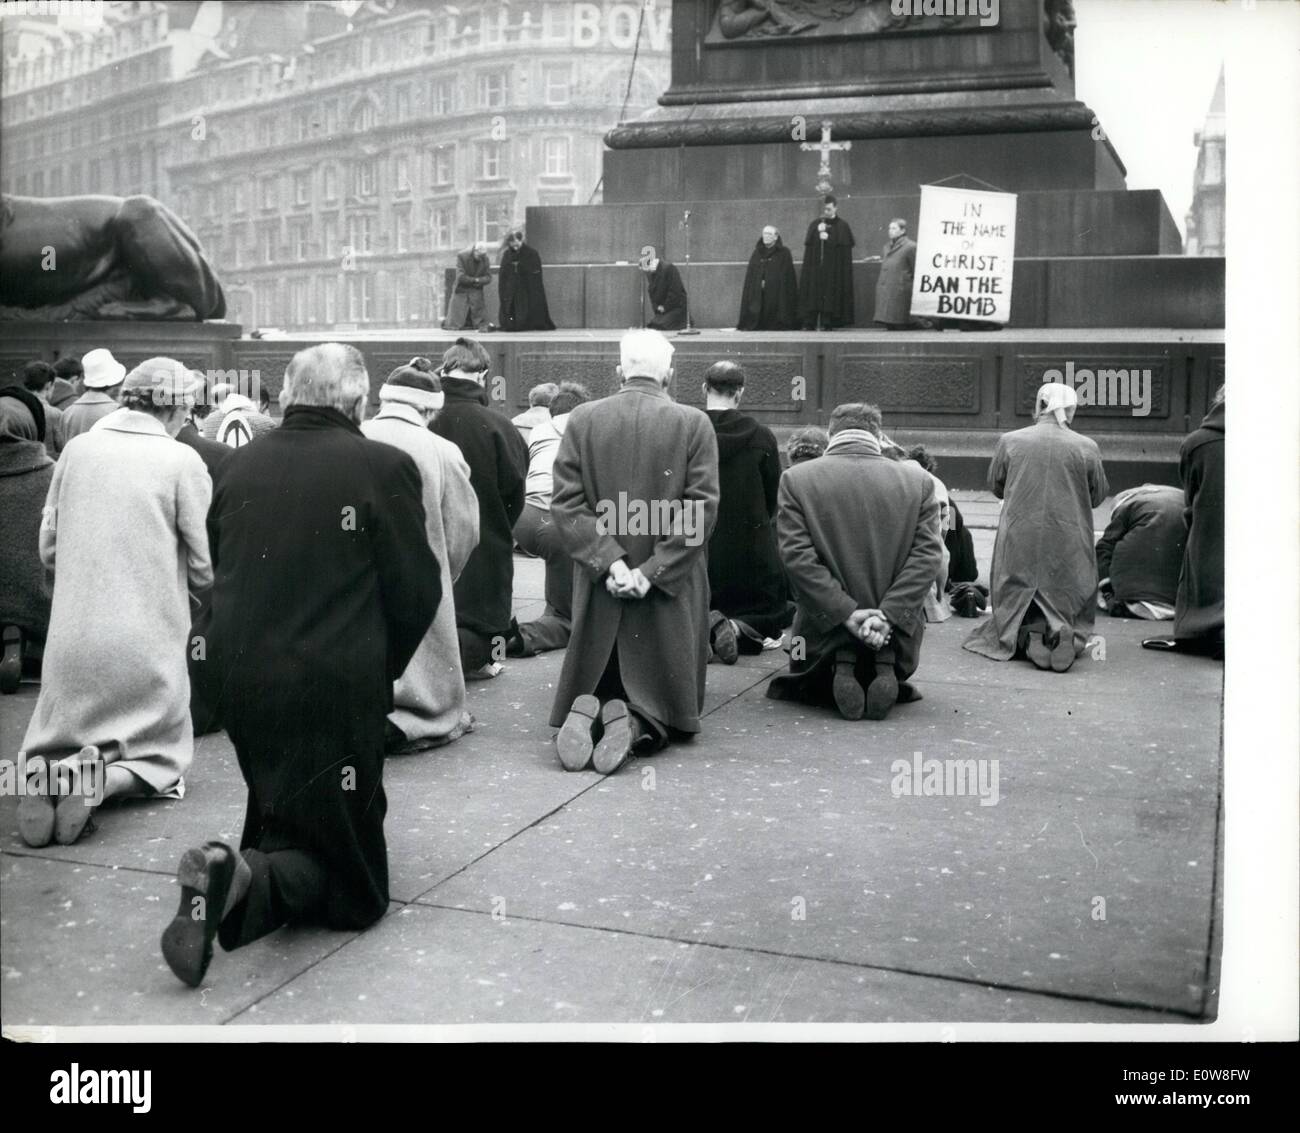 11 novembre 1961 - Genoux'' Ban-la-bombe-manifestation : une nouvelle forme de Ban-la-bombe a poursuivi en protestation à Trafalgar Square hier. Les manifestants s'agenouilla dans une veillée de protestation silencieuse. La manifestation était dirigée par le Rév. Denis Shaw, une anglicane vicaire à Bethnal Green, Londres - à laquelle ont participé 200 partisans. Ils ont affiché une bannière ''au nom du Christ, Ben la bombe''. Plus tard, 30 des manifestants ont tenu une vigile silencieuse 19 heures sur les marches de Saint Martins dans-le-champs. La photo montre les manifestants Anti-bombe agenouiller dans Trafalgar Square hier. Banque D'Images